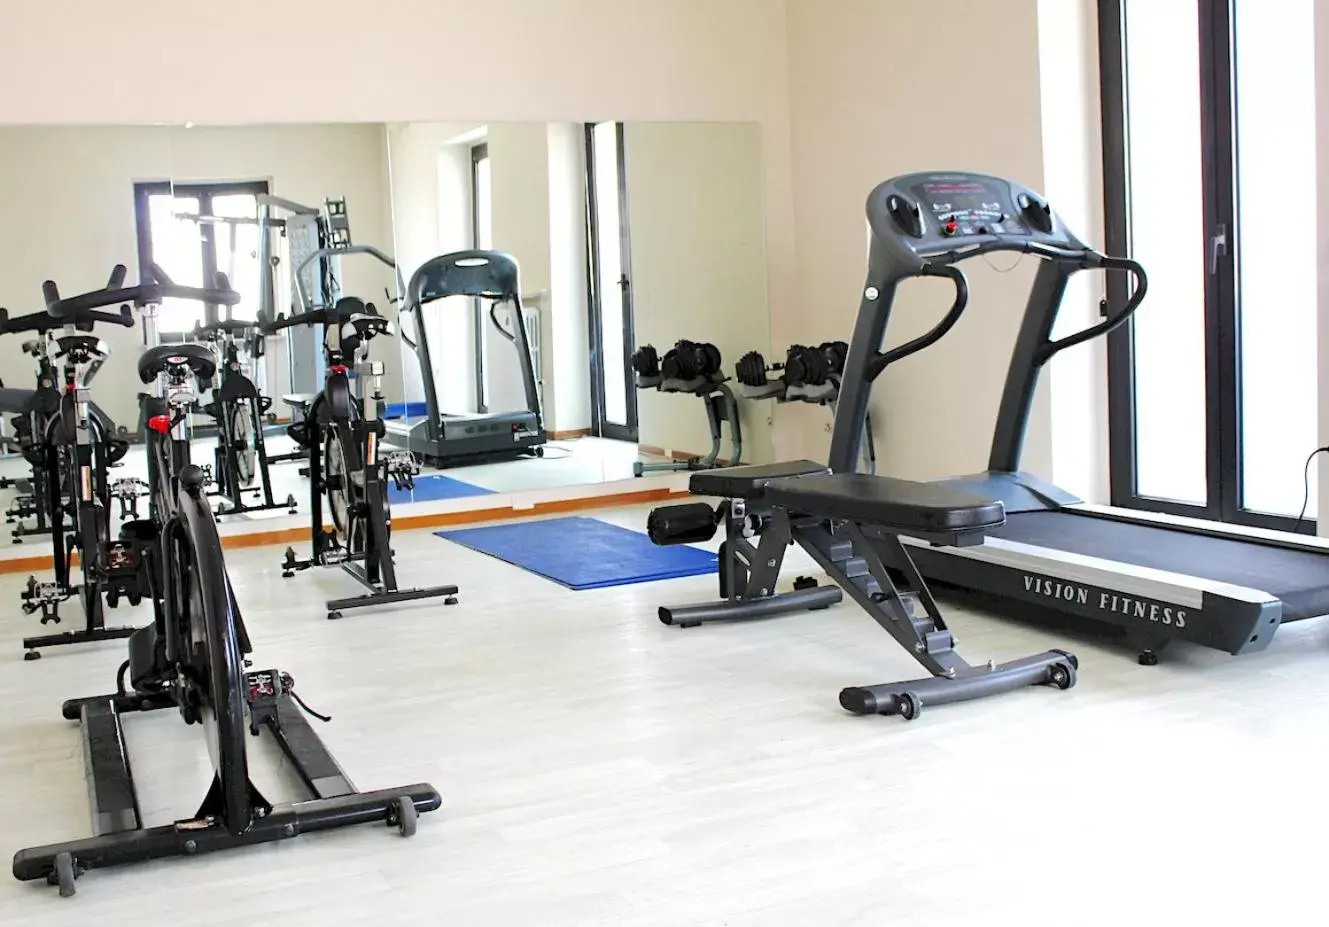 Fitness centre/facilities, Fitness Center/Facilities in Enjoy Garda Hotel